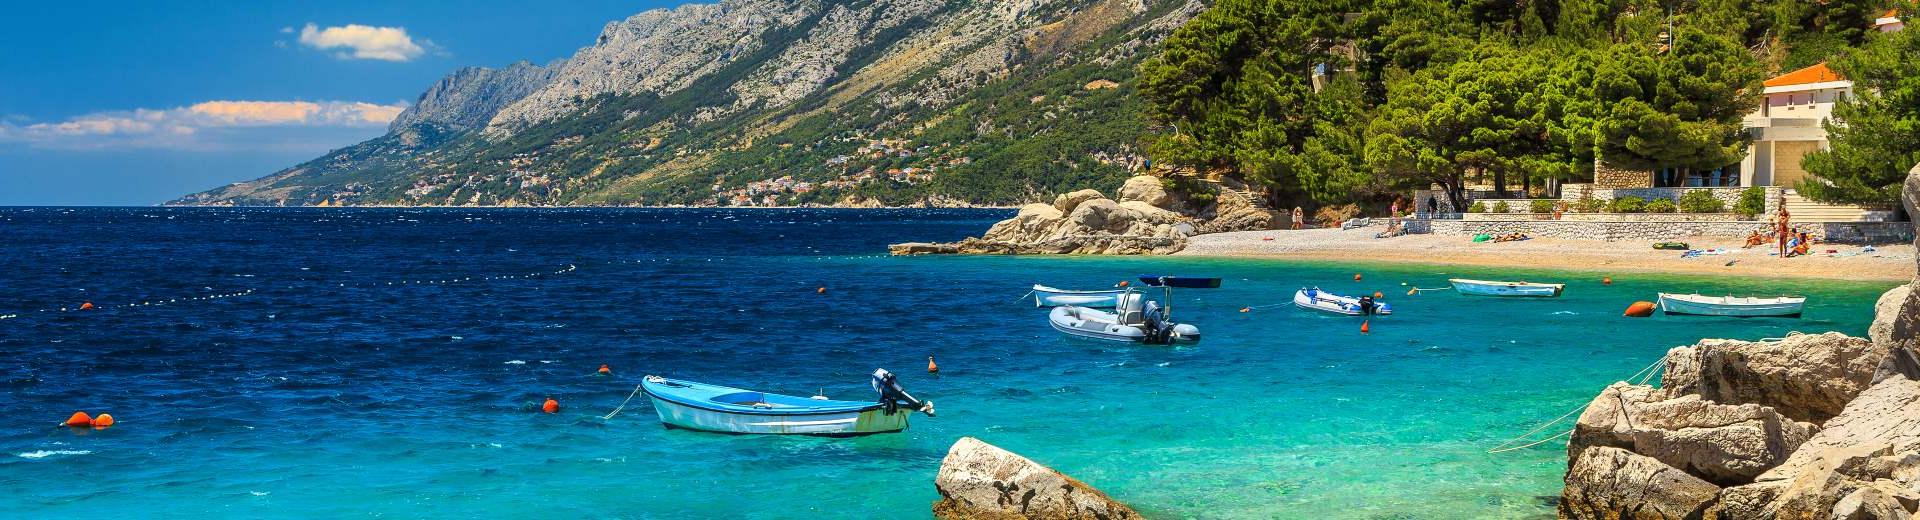 Vakantiehuis Dubrovnik - Cultuur en schoonheid in Kroatië - EuroRelais